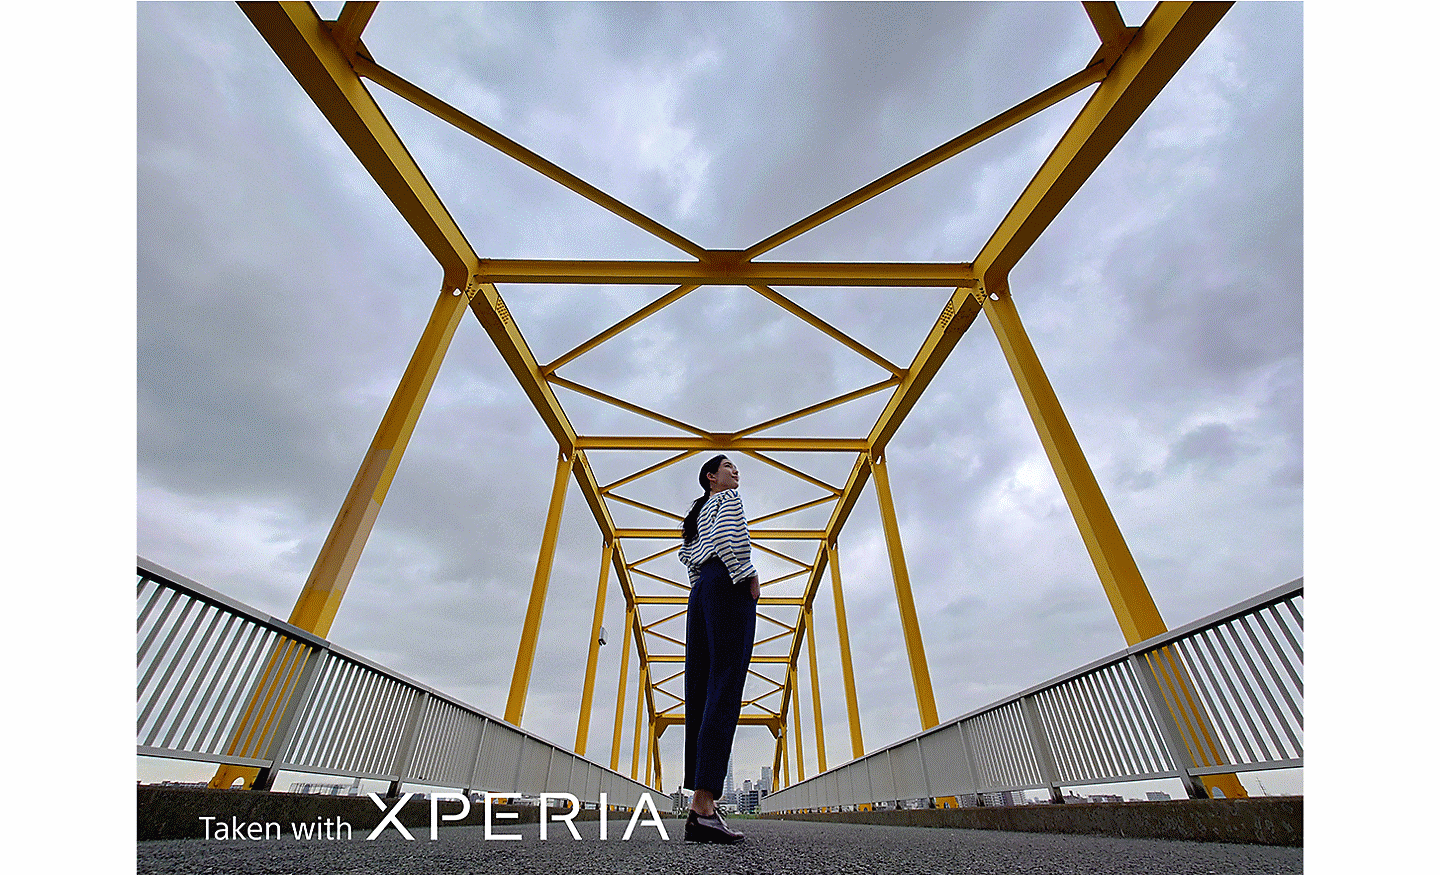 Hình ảnh ấn tượng về một người phụ nữ đang tạo dáng trên cây cầu kim loại. Trên ảnh có dòng chữ "Taken with XPERIA” (Chụp bằng XPERIA).